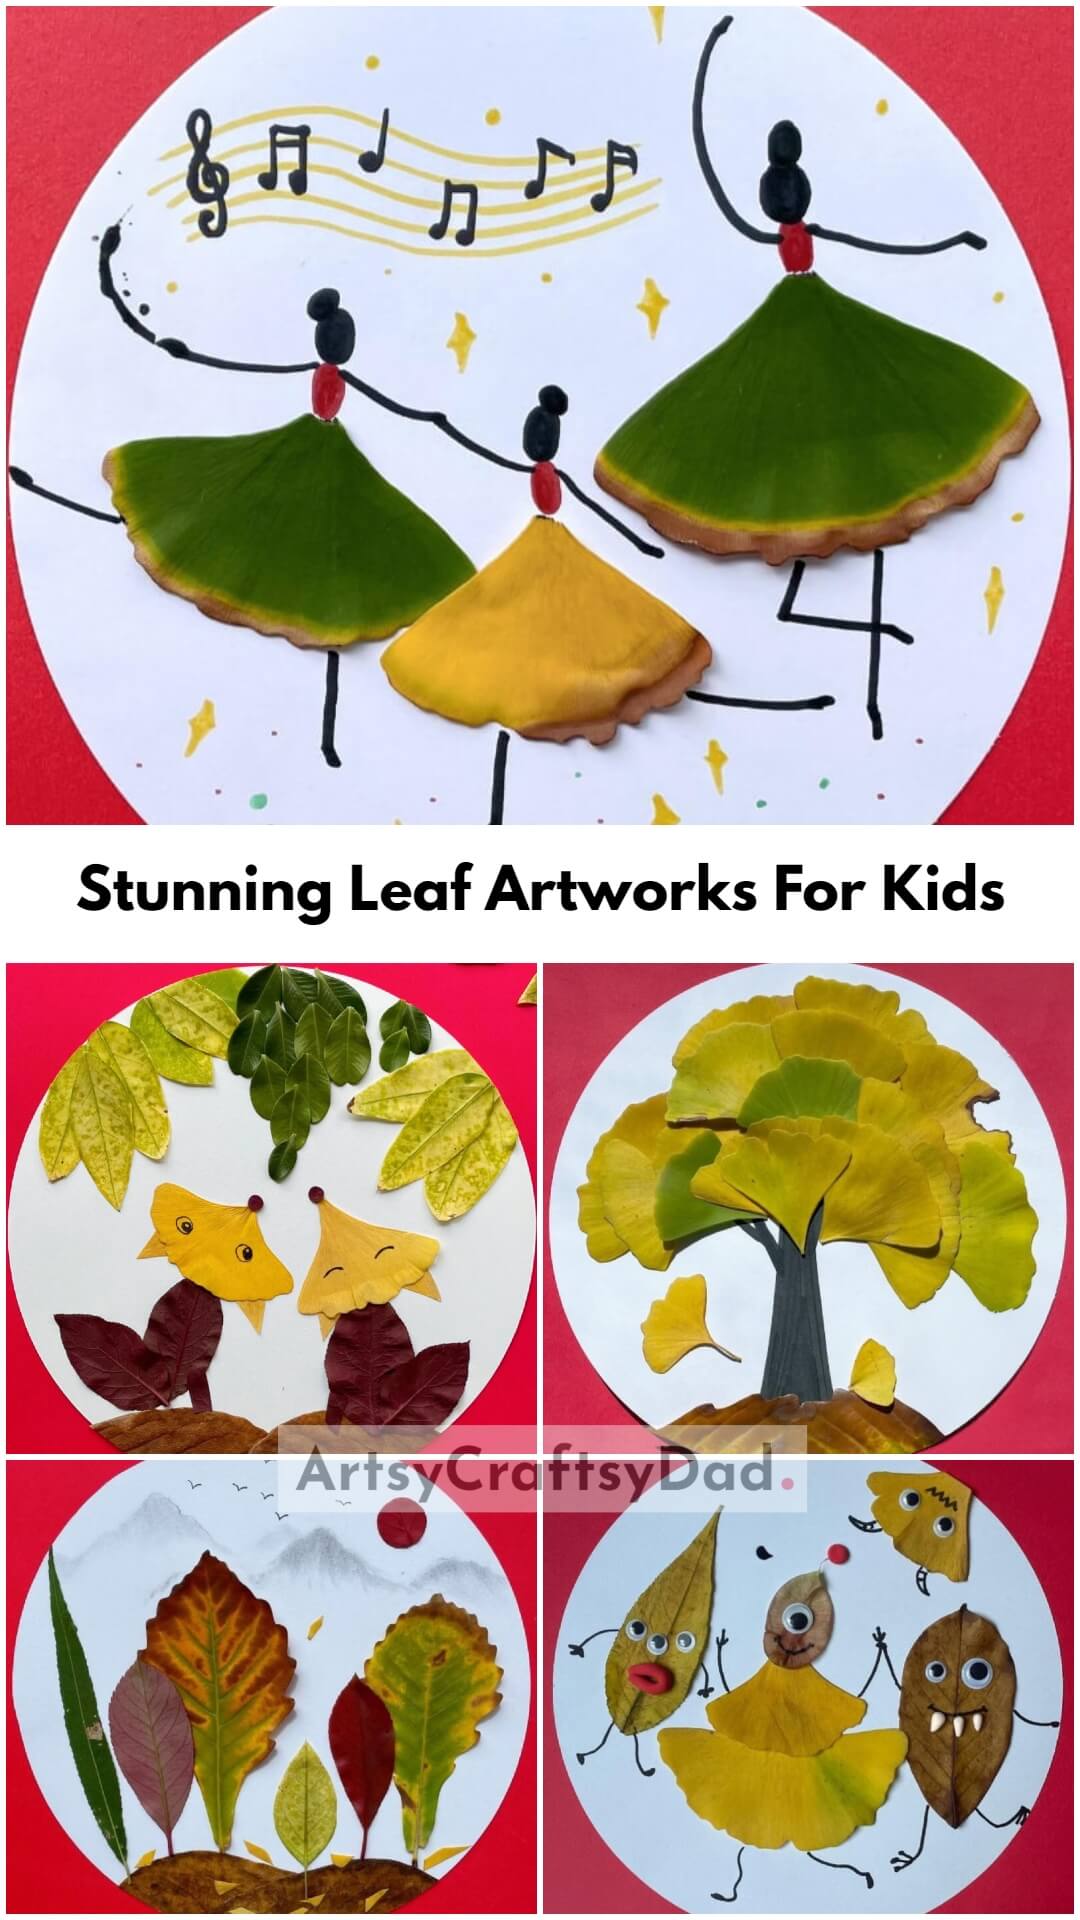 Creative & Stunning Leaf Artworks For Kids